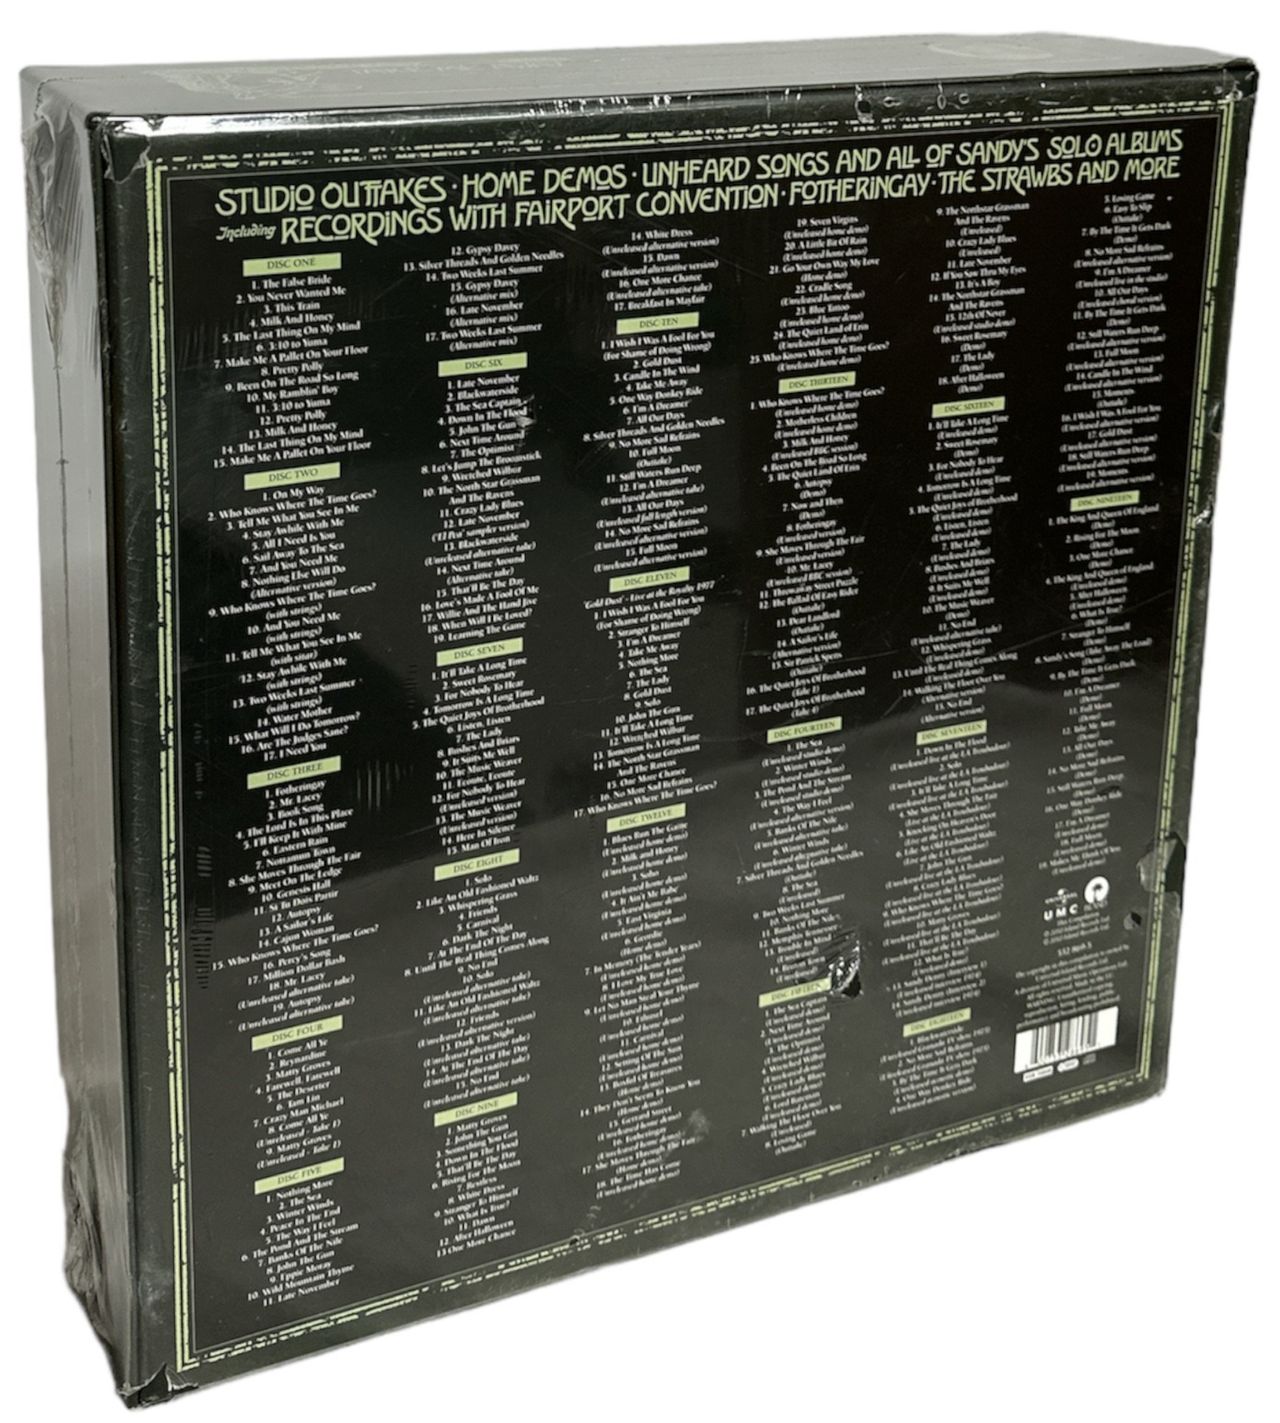 Sandy Denny Sandy Denny - Sealed UK Cd album box set